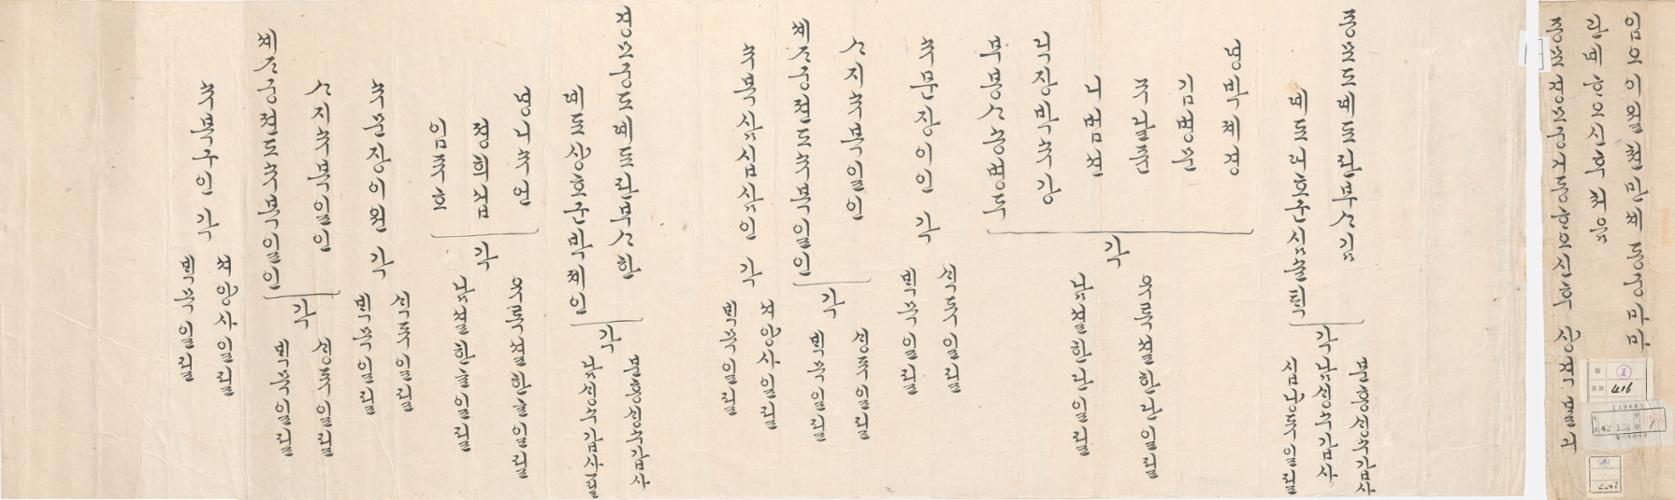 2_1882년 2월 동궁마마 종묘 경모궁 거동 시 상격 발기 (new).jpg